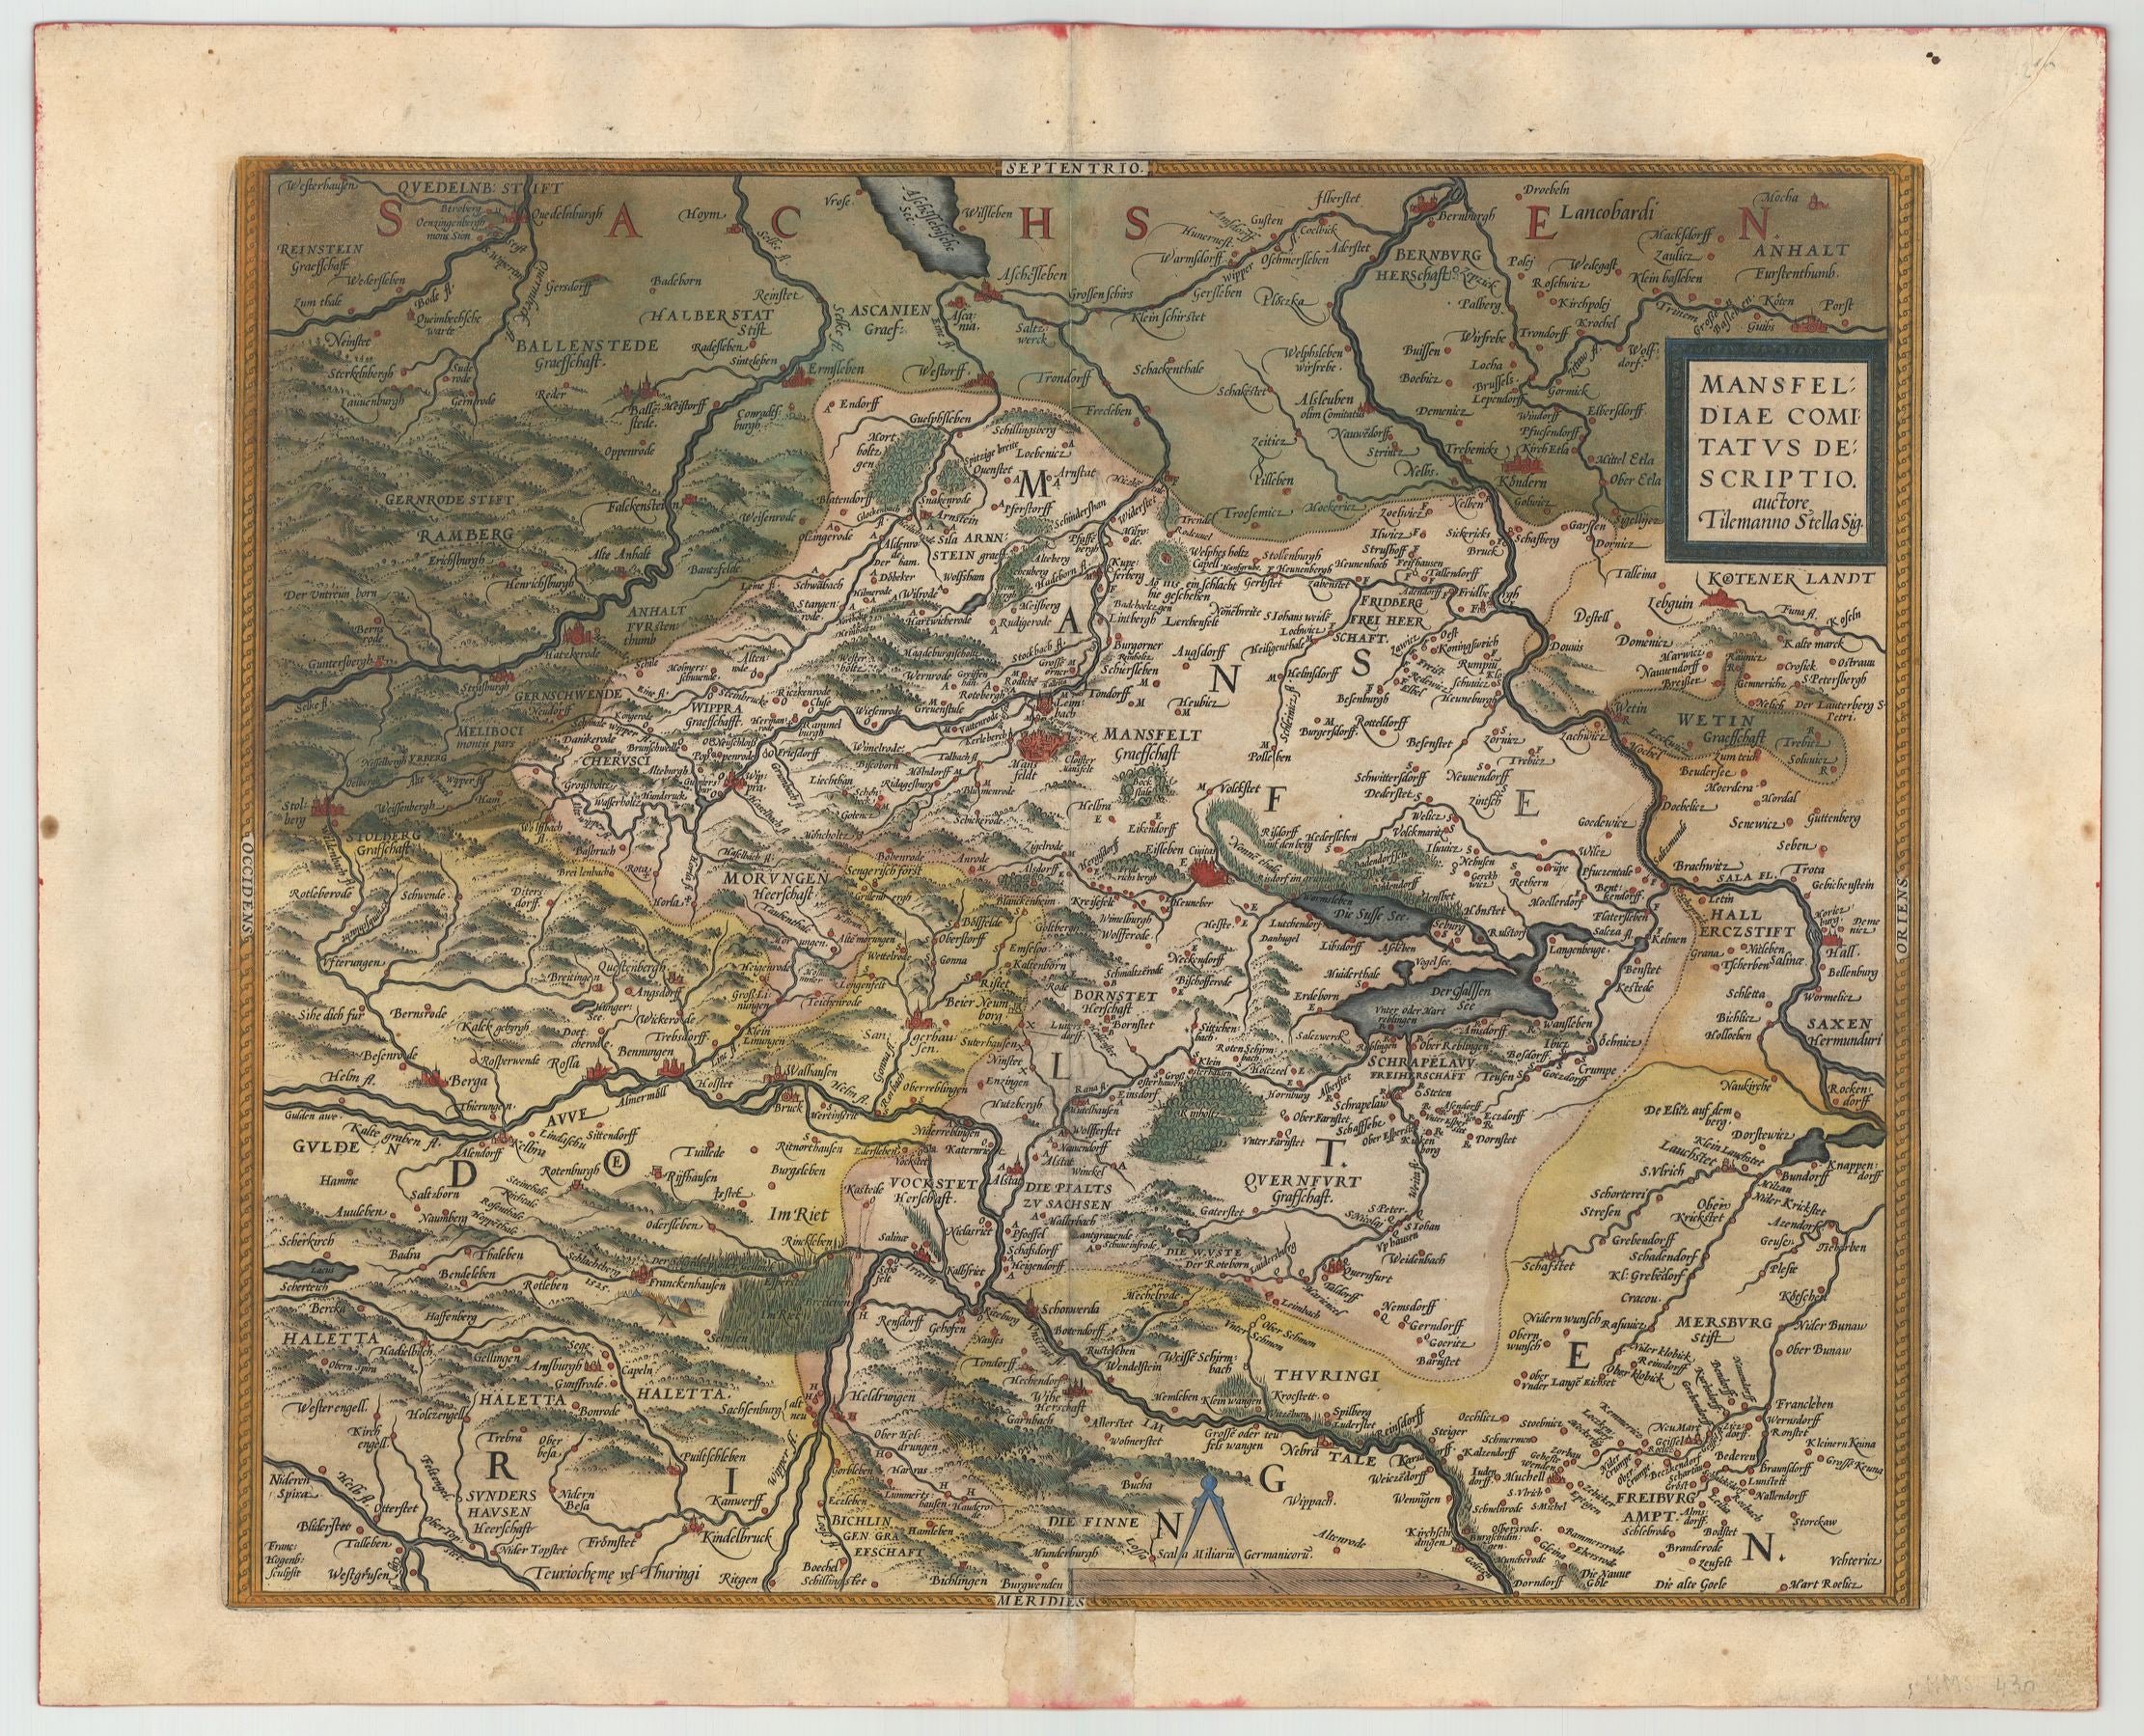 Sachsen-Anhalt im Jahr 1573 von Abraham Ortelius